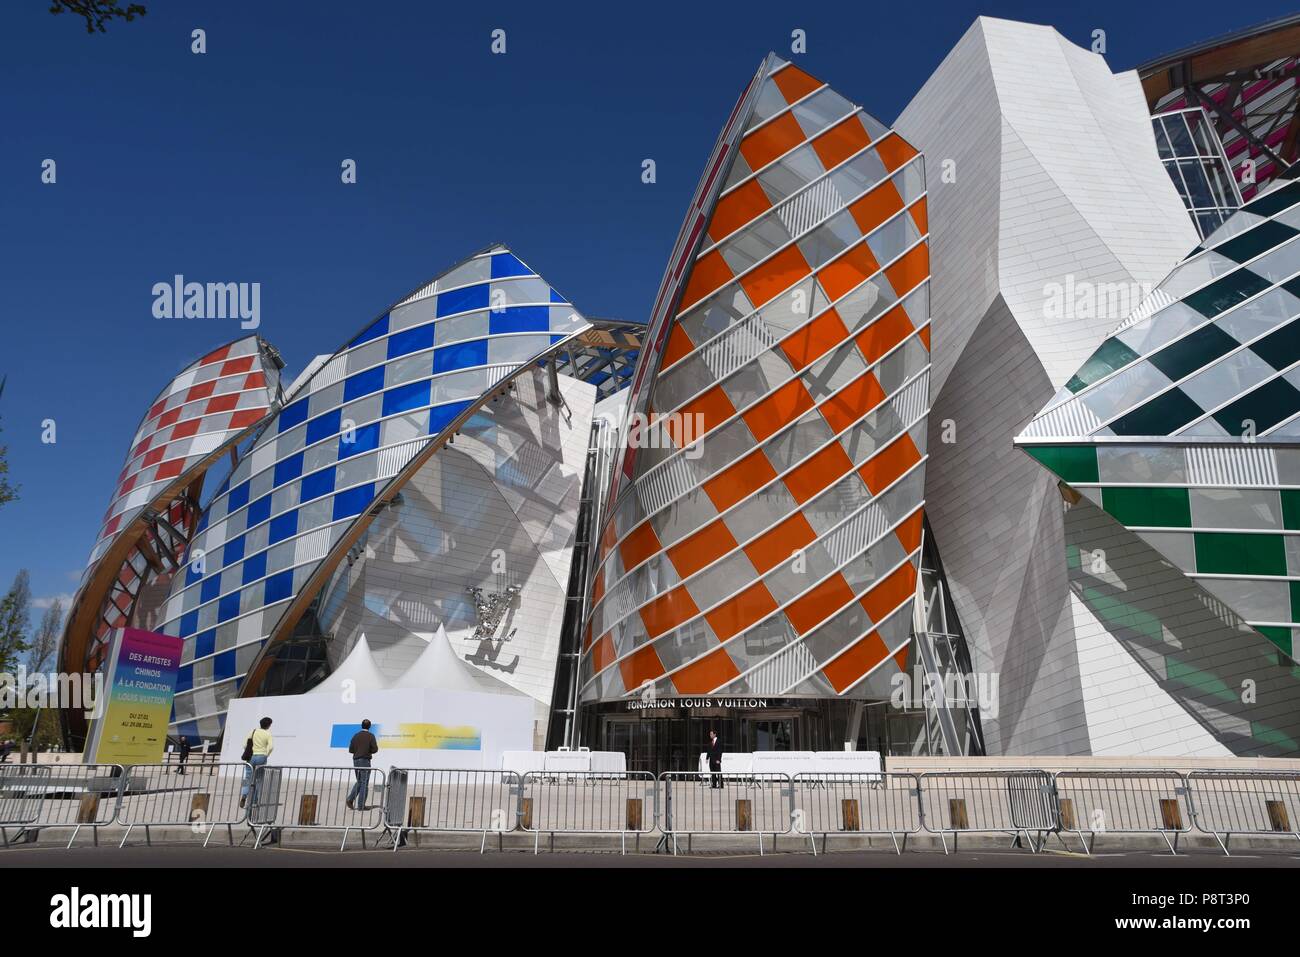 April 18, 2016 - Paris, France: View of the Fondation Louis Vuitton after  the building has been decorated with colored panels designed by French  artist Daniel Buren. Vue de la Fondation Louis